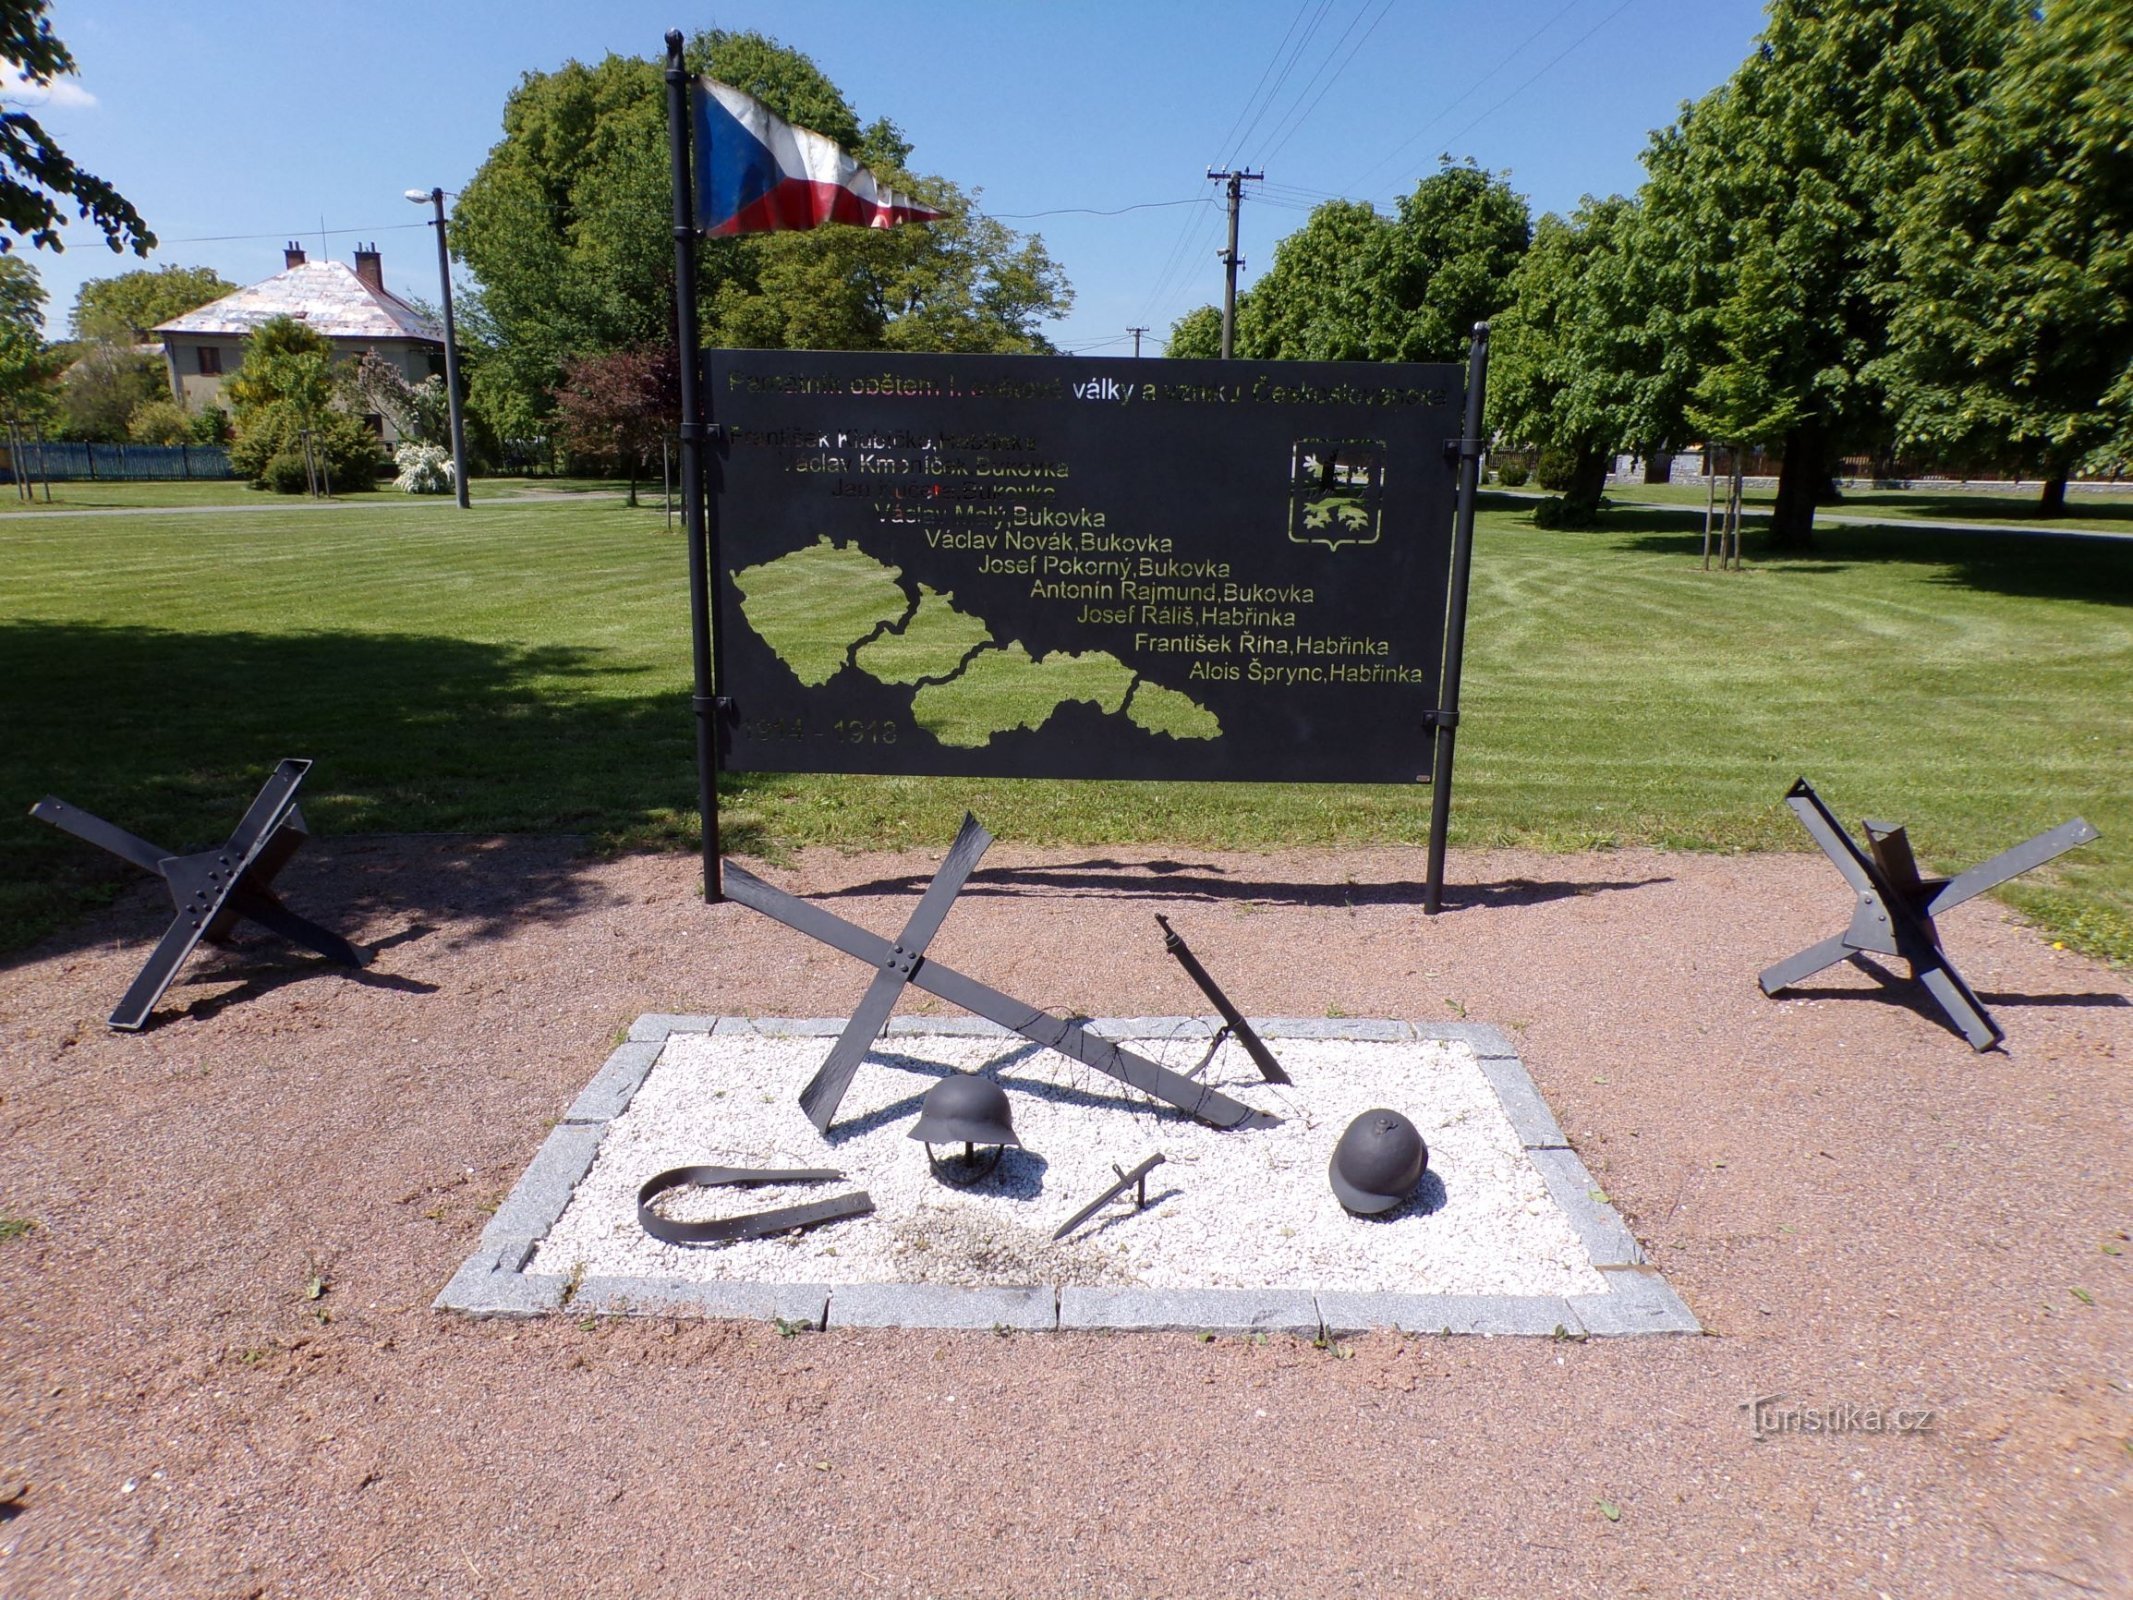 Đài tưởng niệm các nạn nhân của Chiến tranh thế giới thứ nhất và sự thành lập của Tiệp Khắc (Habřinka, ngày 1 tháng 3.6.2021 năm XNUMX)